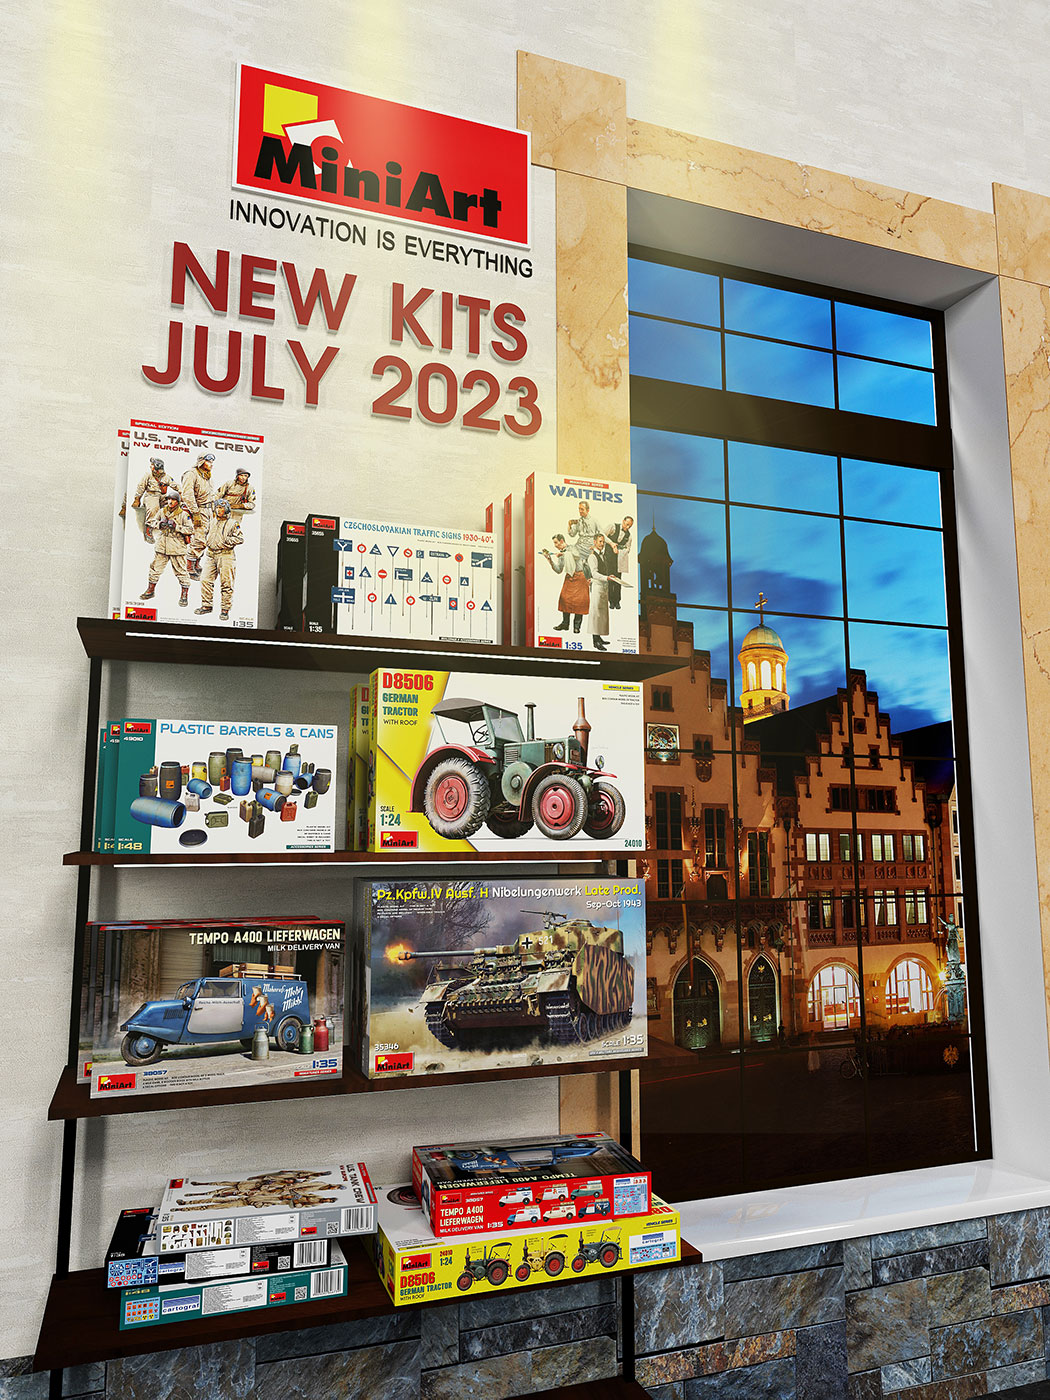 New MiniArt Kits Available July 2023